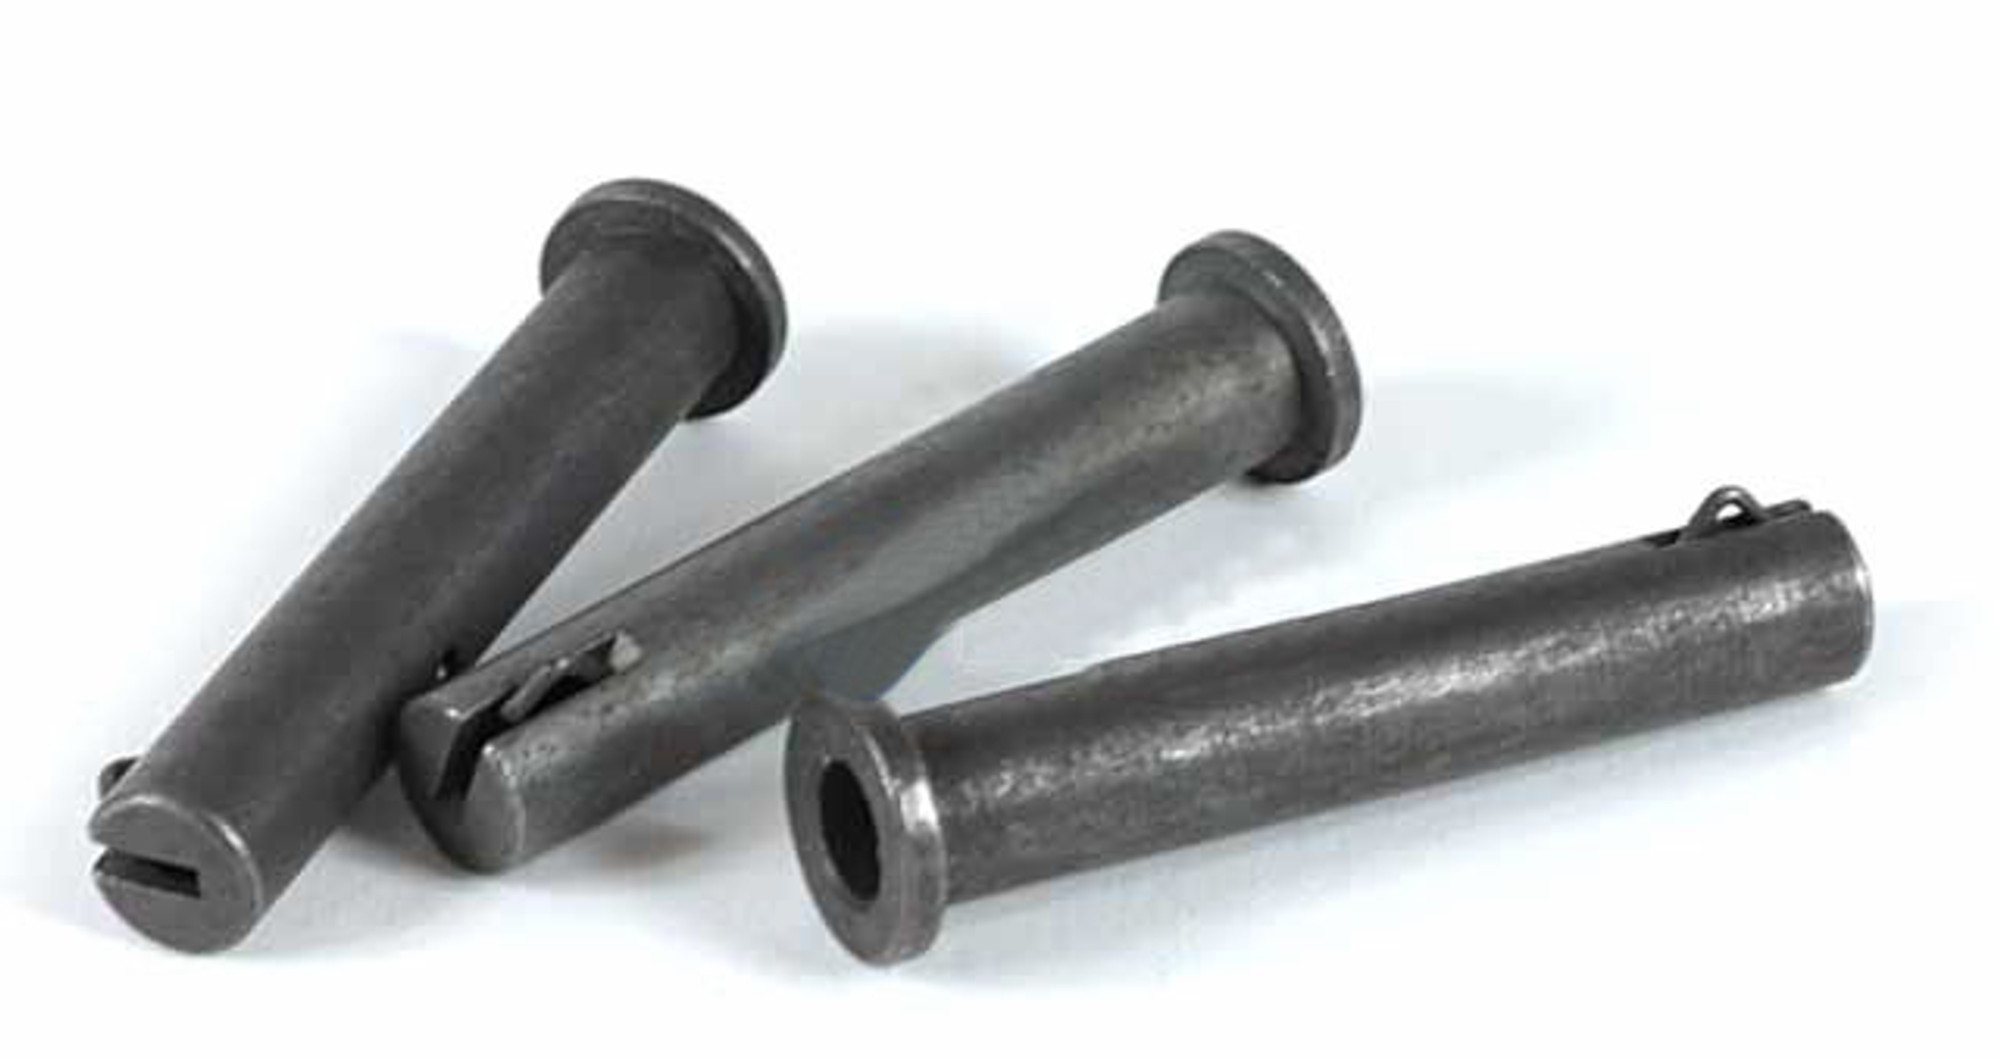 Matrix KG3 / KSG1 / MC51 Steel Reinforced Handguard Lock Pin Set of 3.